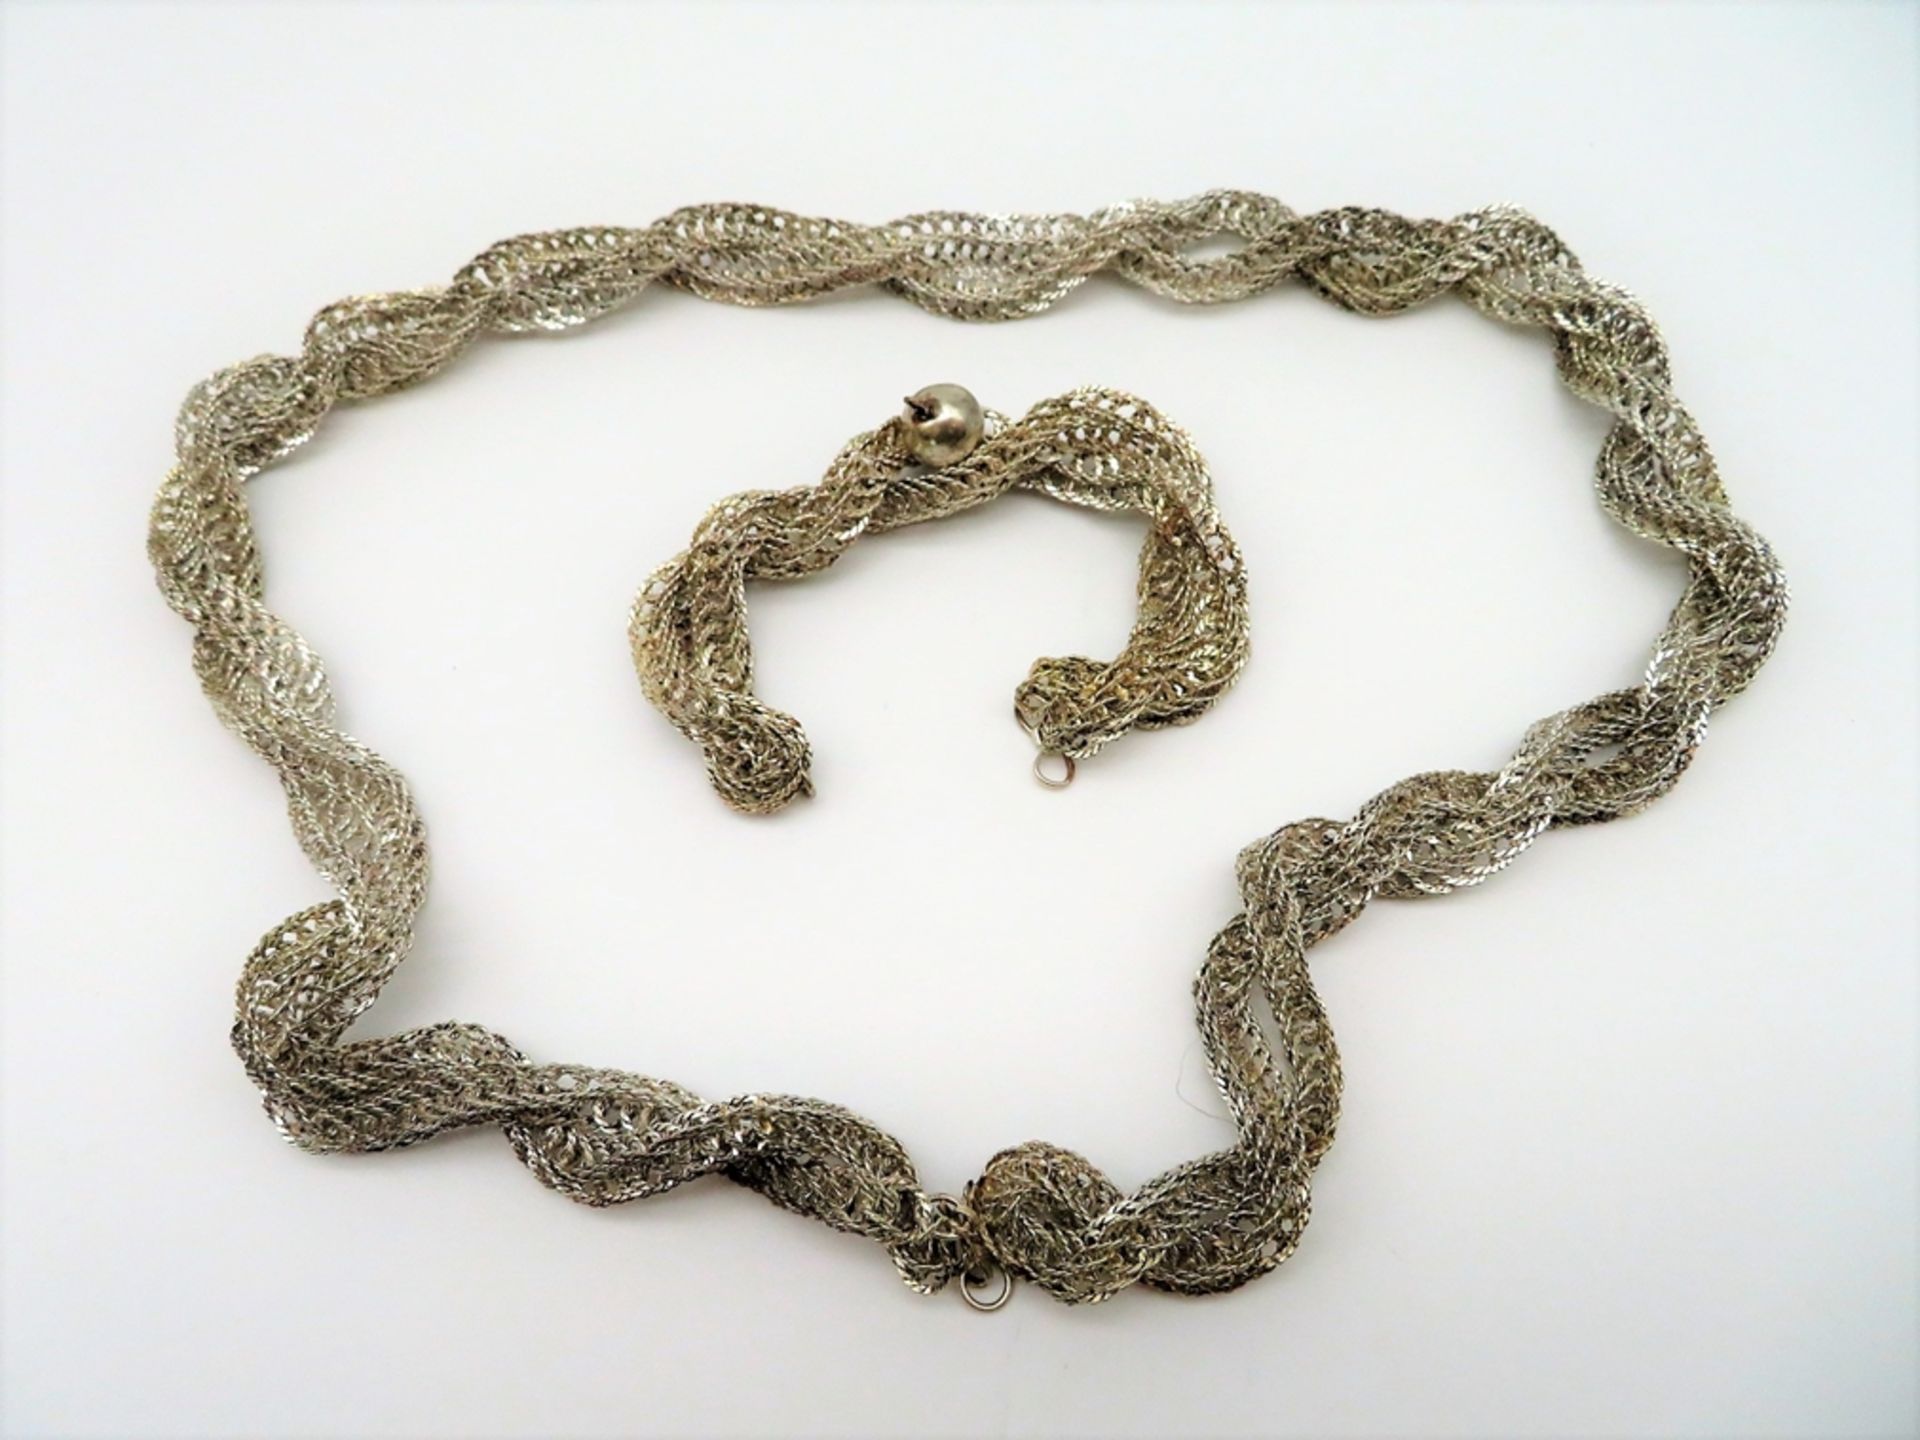 Kette und Armband, wohl Naher Osten, Kupfer versilbert, geflochen und gedreht, Kette l 77 cm, Armba